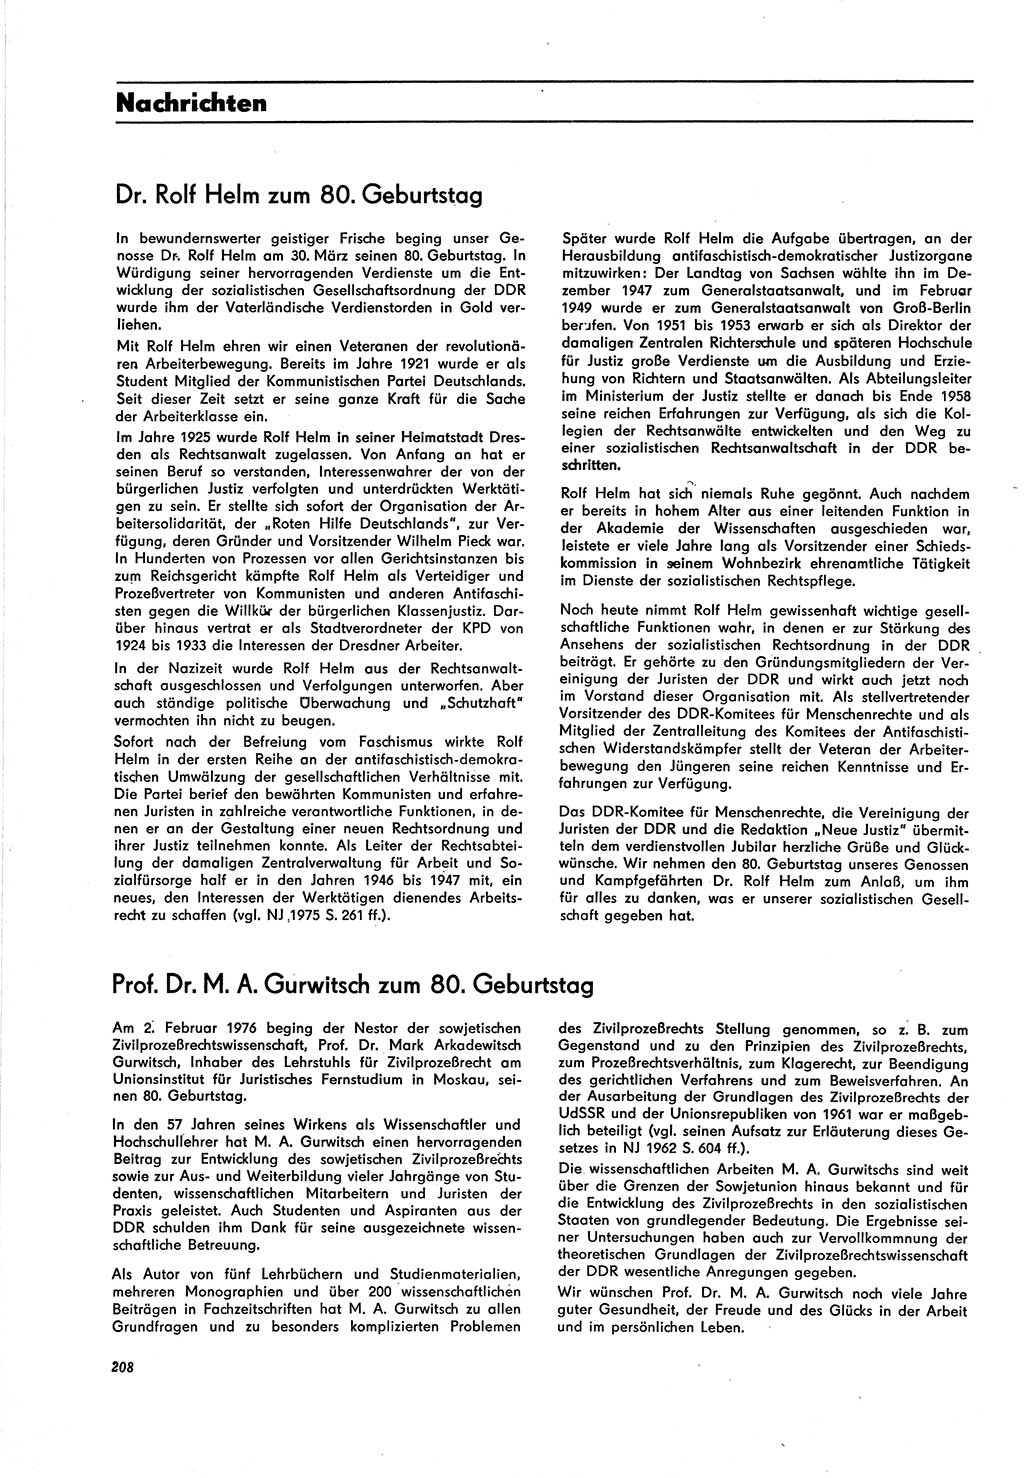 Neue Justiz (NJ), Zeitschrift für Recht und Rechtswissenschaft [Deutsche Demokratische Republik (DDR)], 30. Jahrgang 1976, Seite 208 (NJ DDR 1976, S. 208)